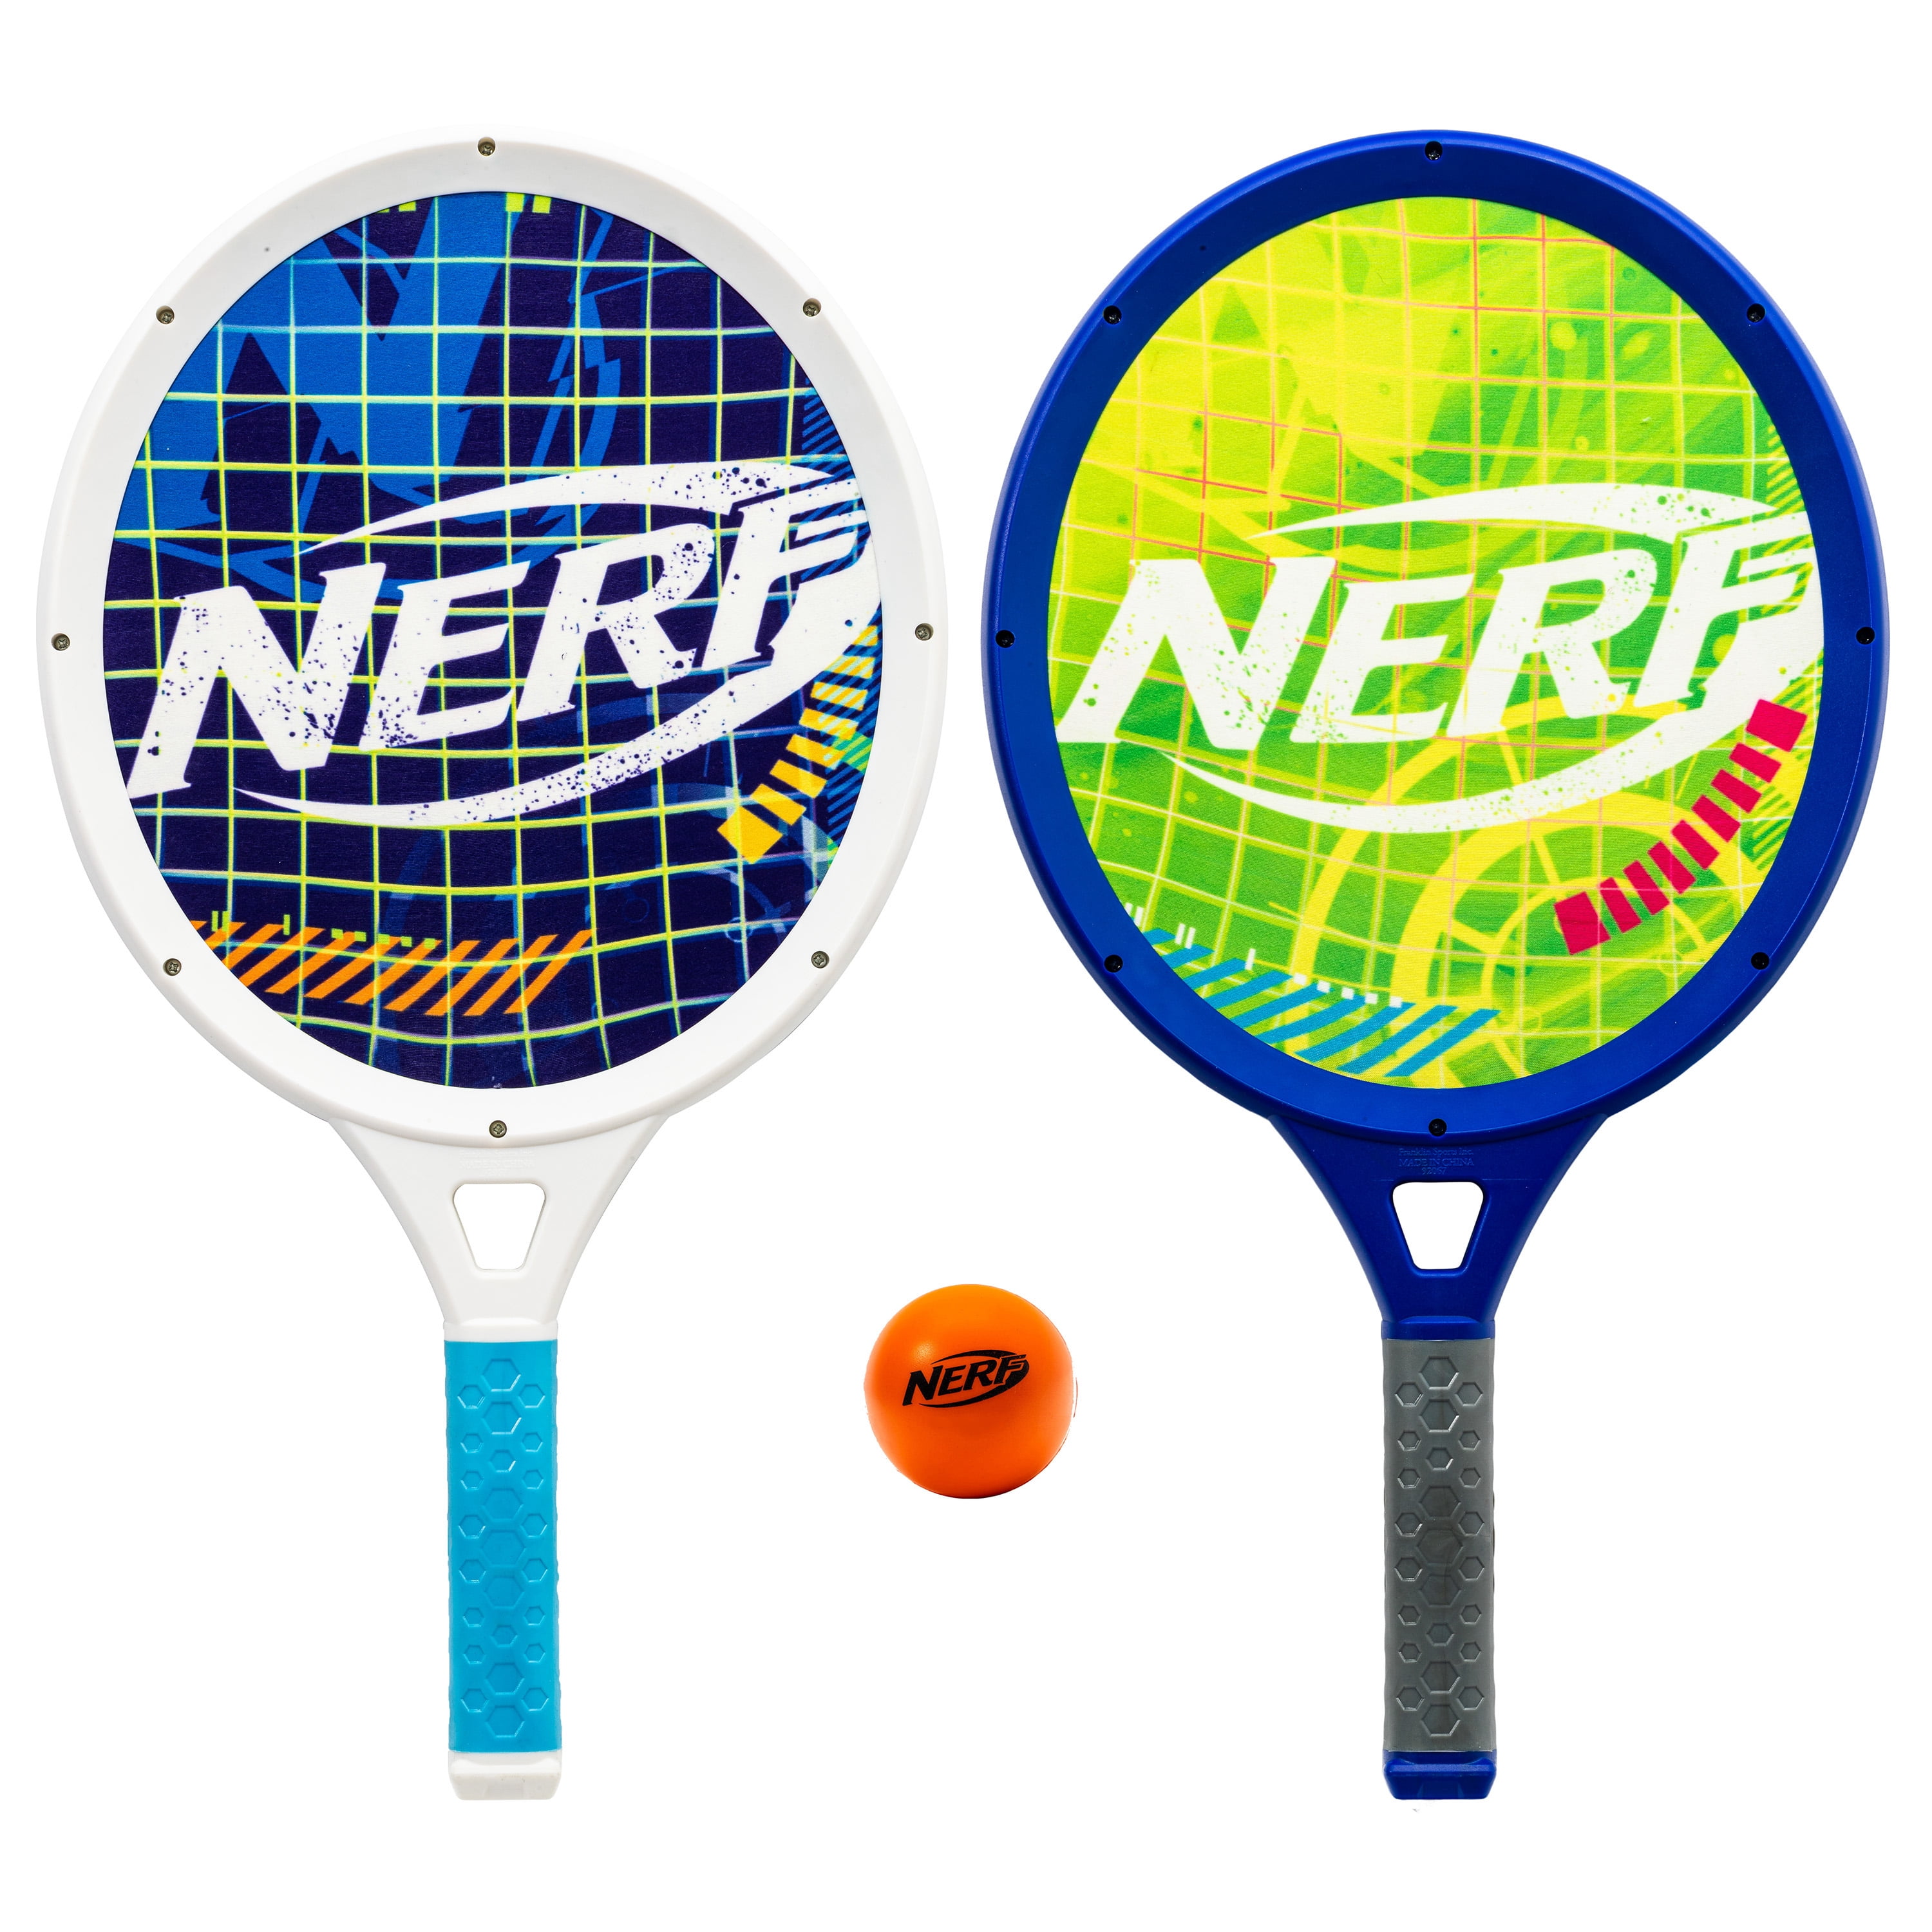 Compliment Betuttelen ophouden Nerf Foam Tennis Set for Kids - 2 Player Kids Tennis Set - Jumbo Rackets  and Foam Tennis Ball - Walmart.com